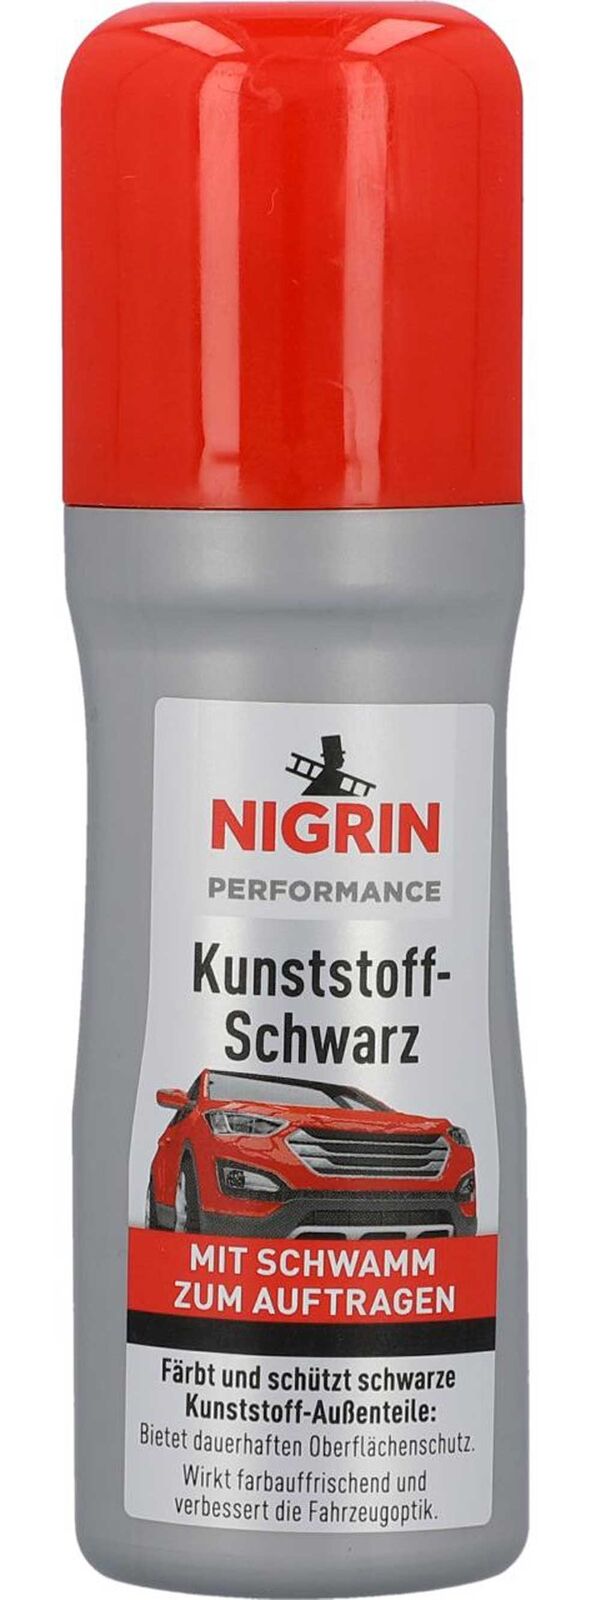 Nigrin Performance Kunststoff-Schwarz 75ml Stossstangenschwarz  Kunststoffschwarz